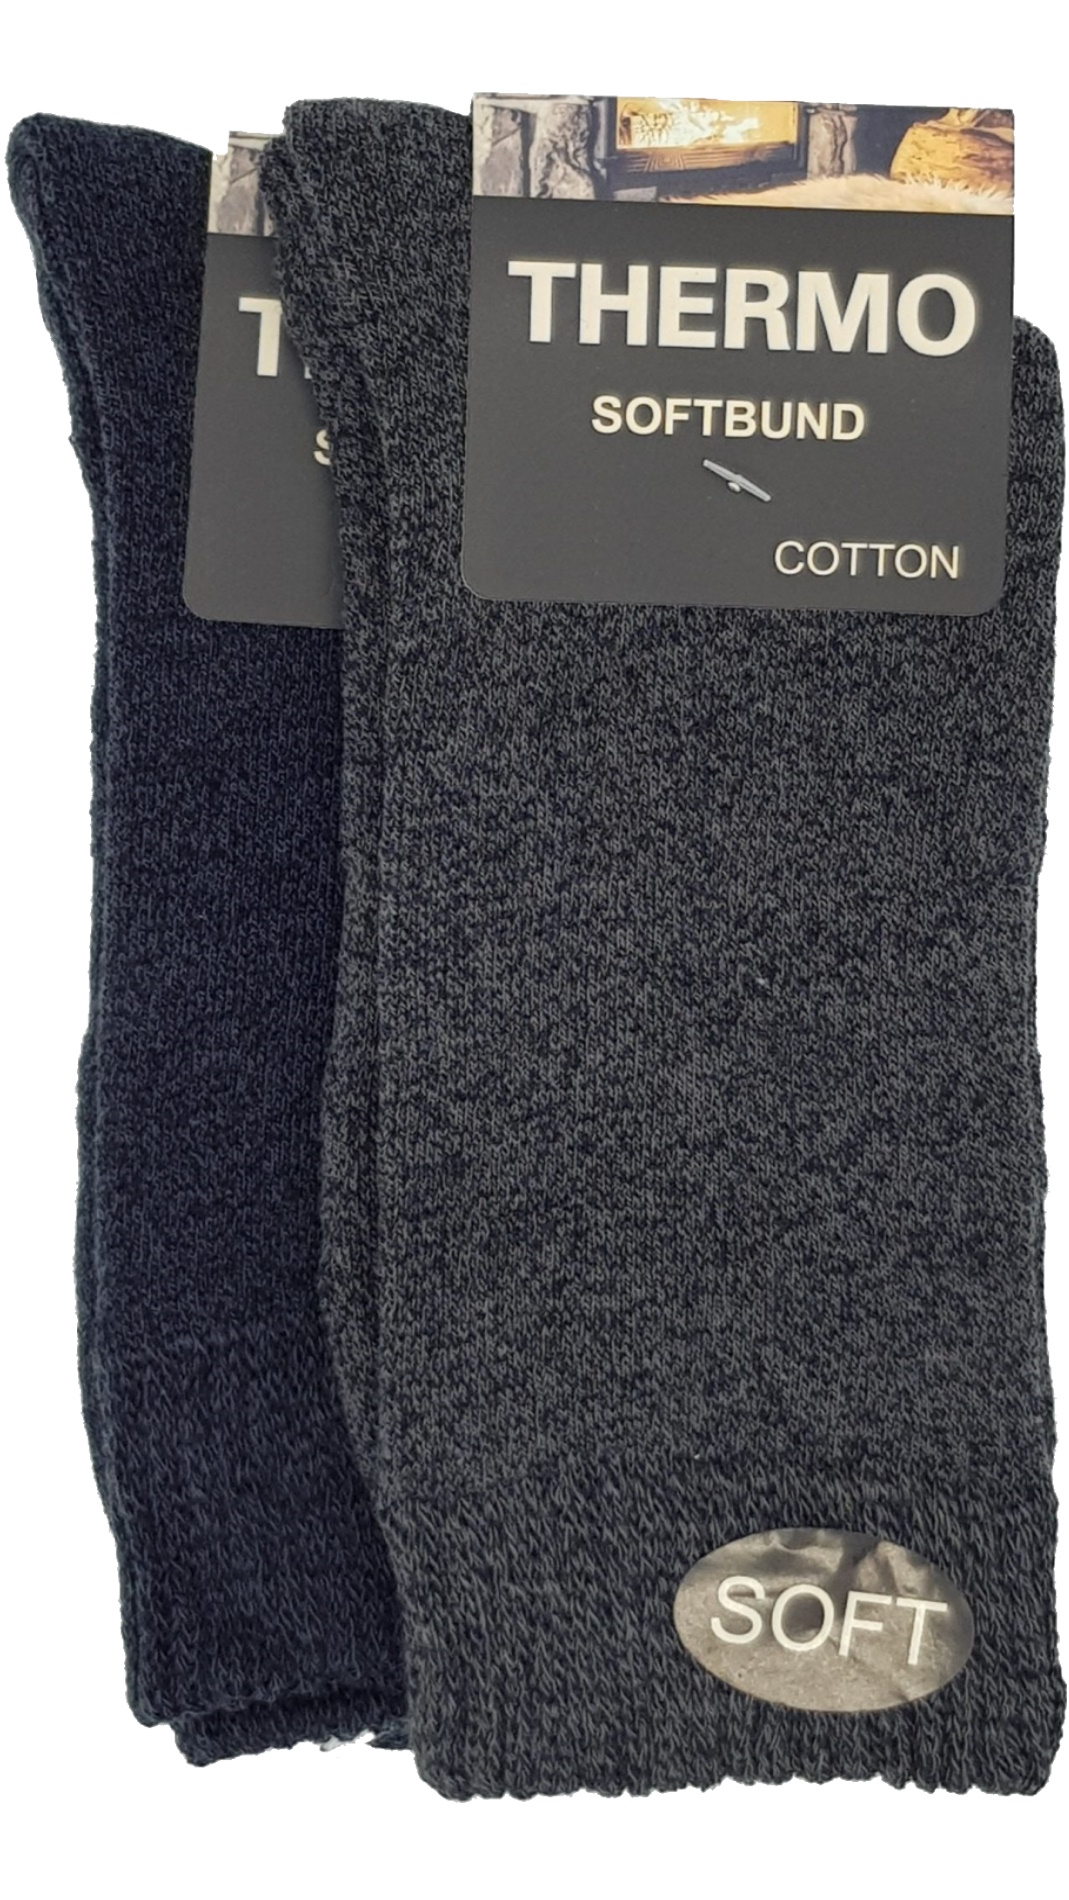 Thermo Soft Socken (23402,38413) Softbund 2 – Paar